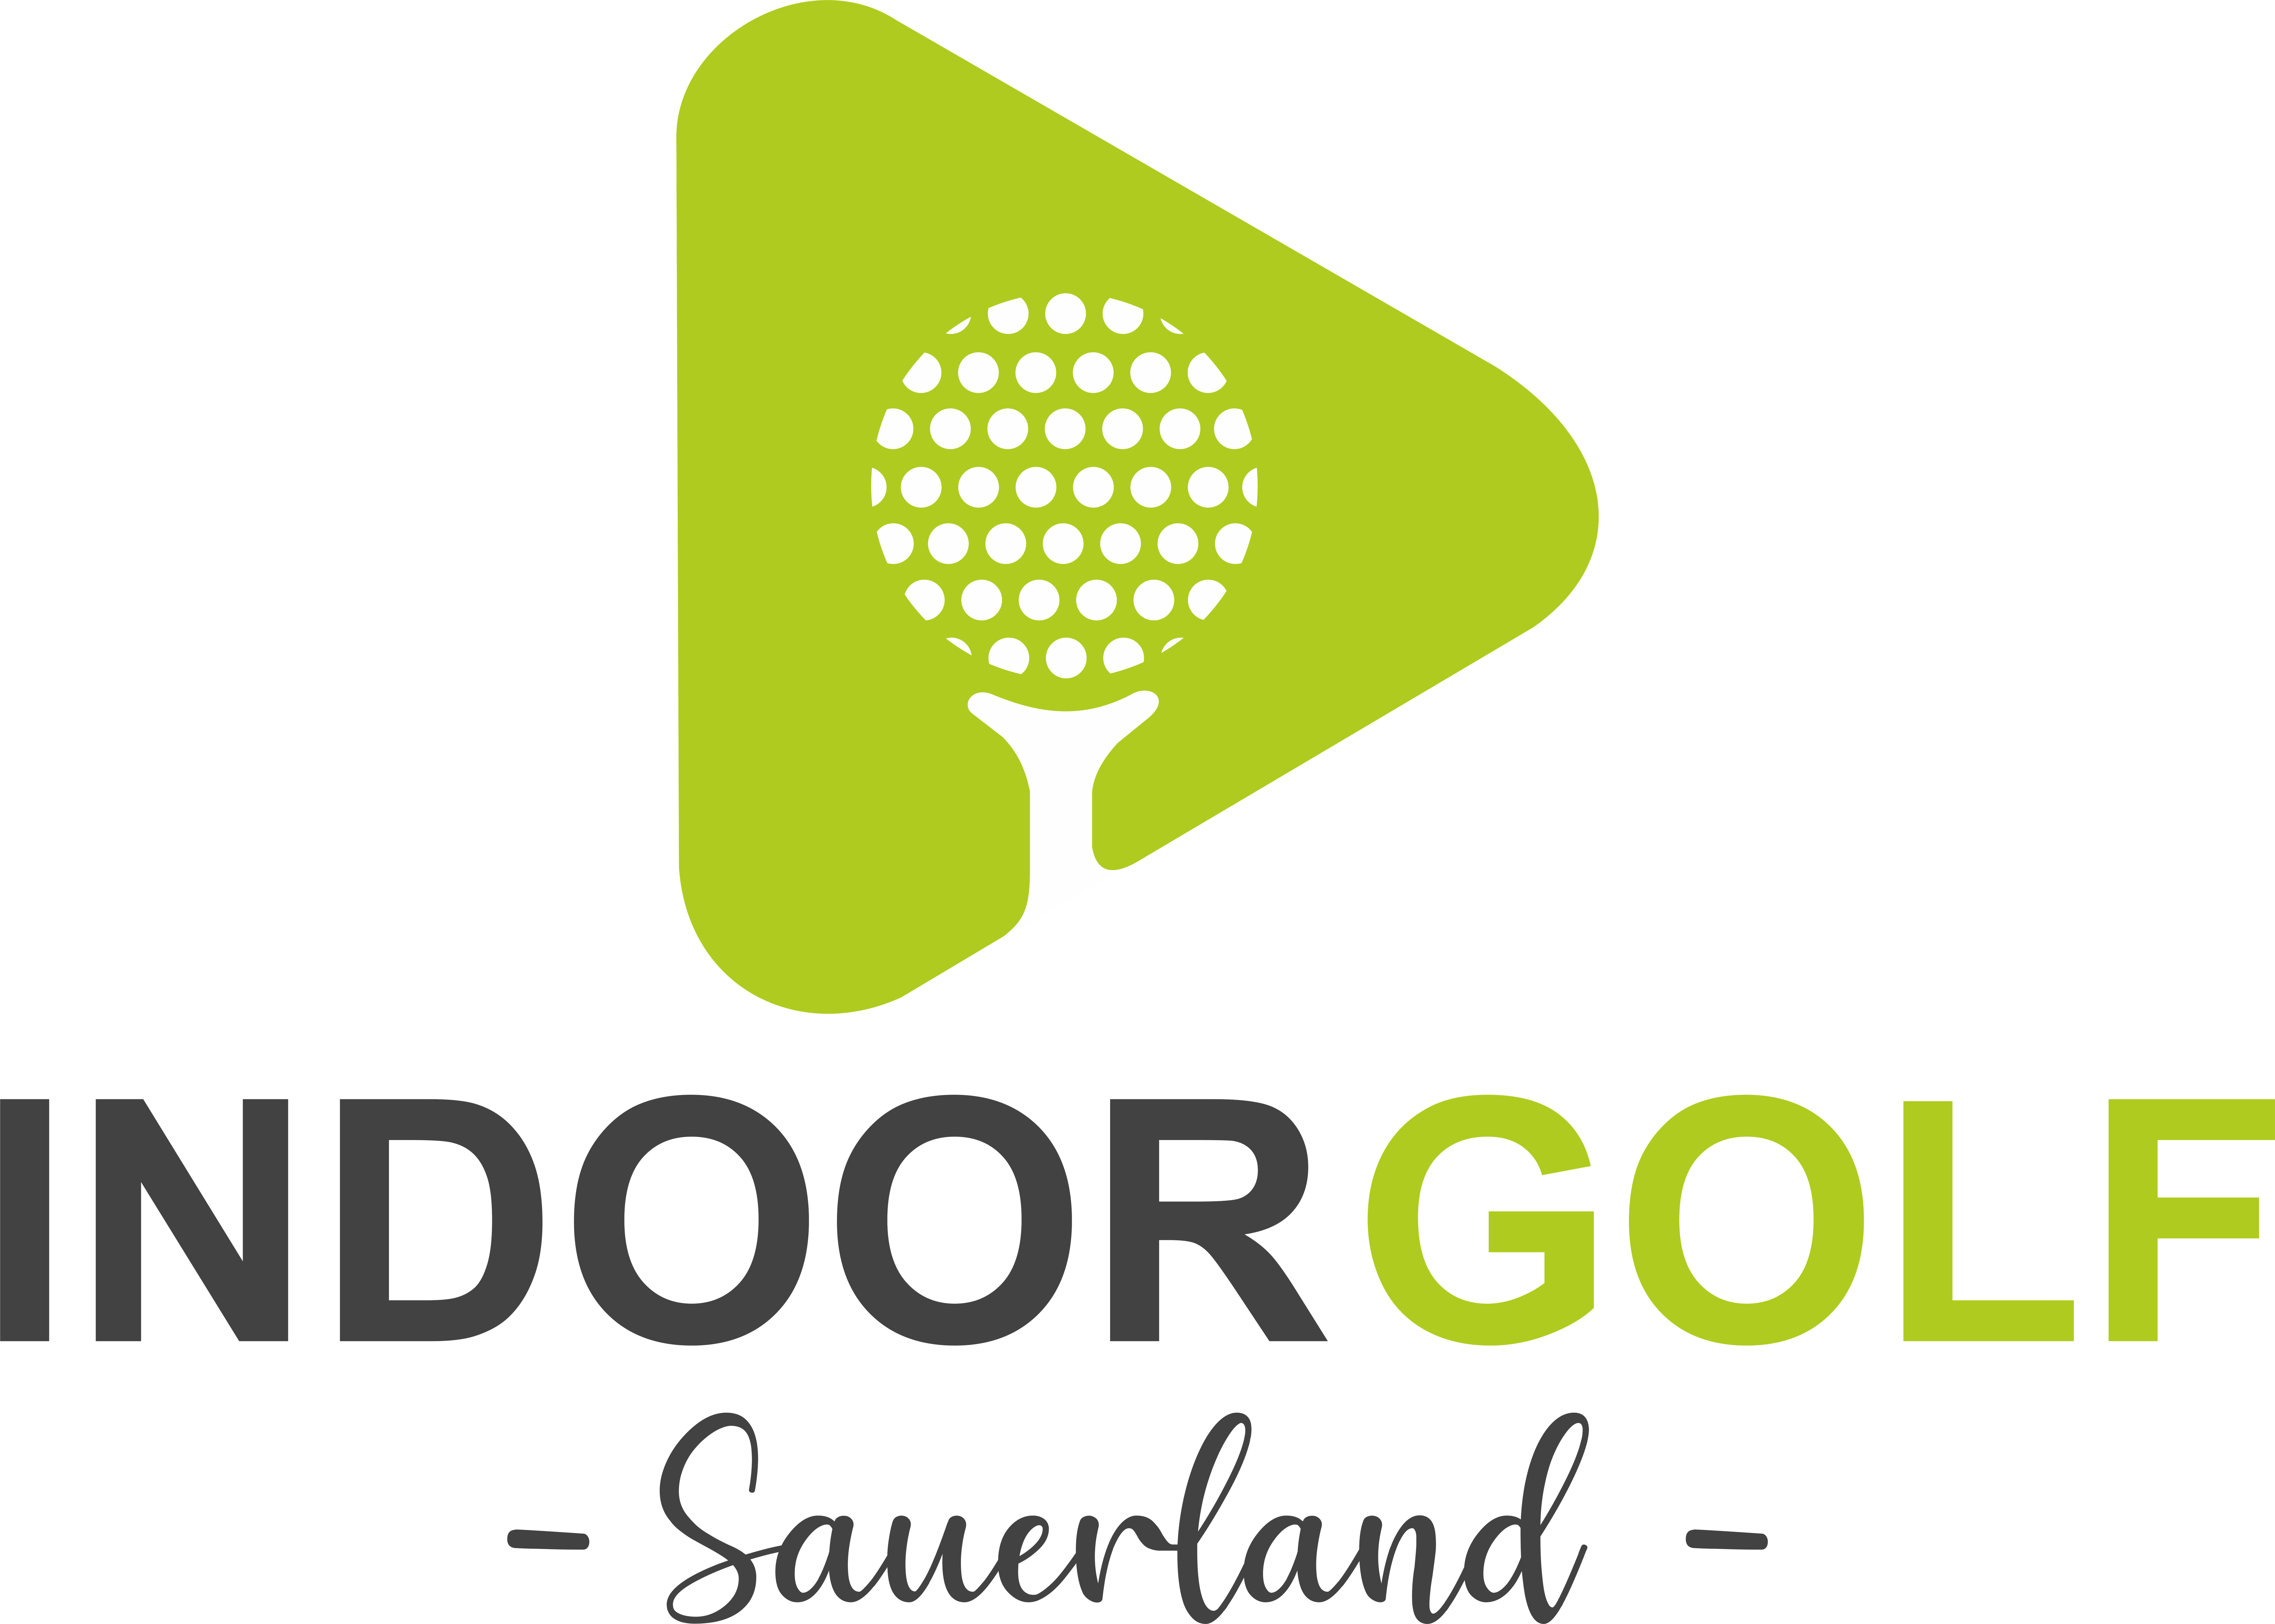 (c) Indoor-golf-sauerland.de